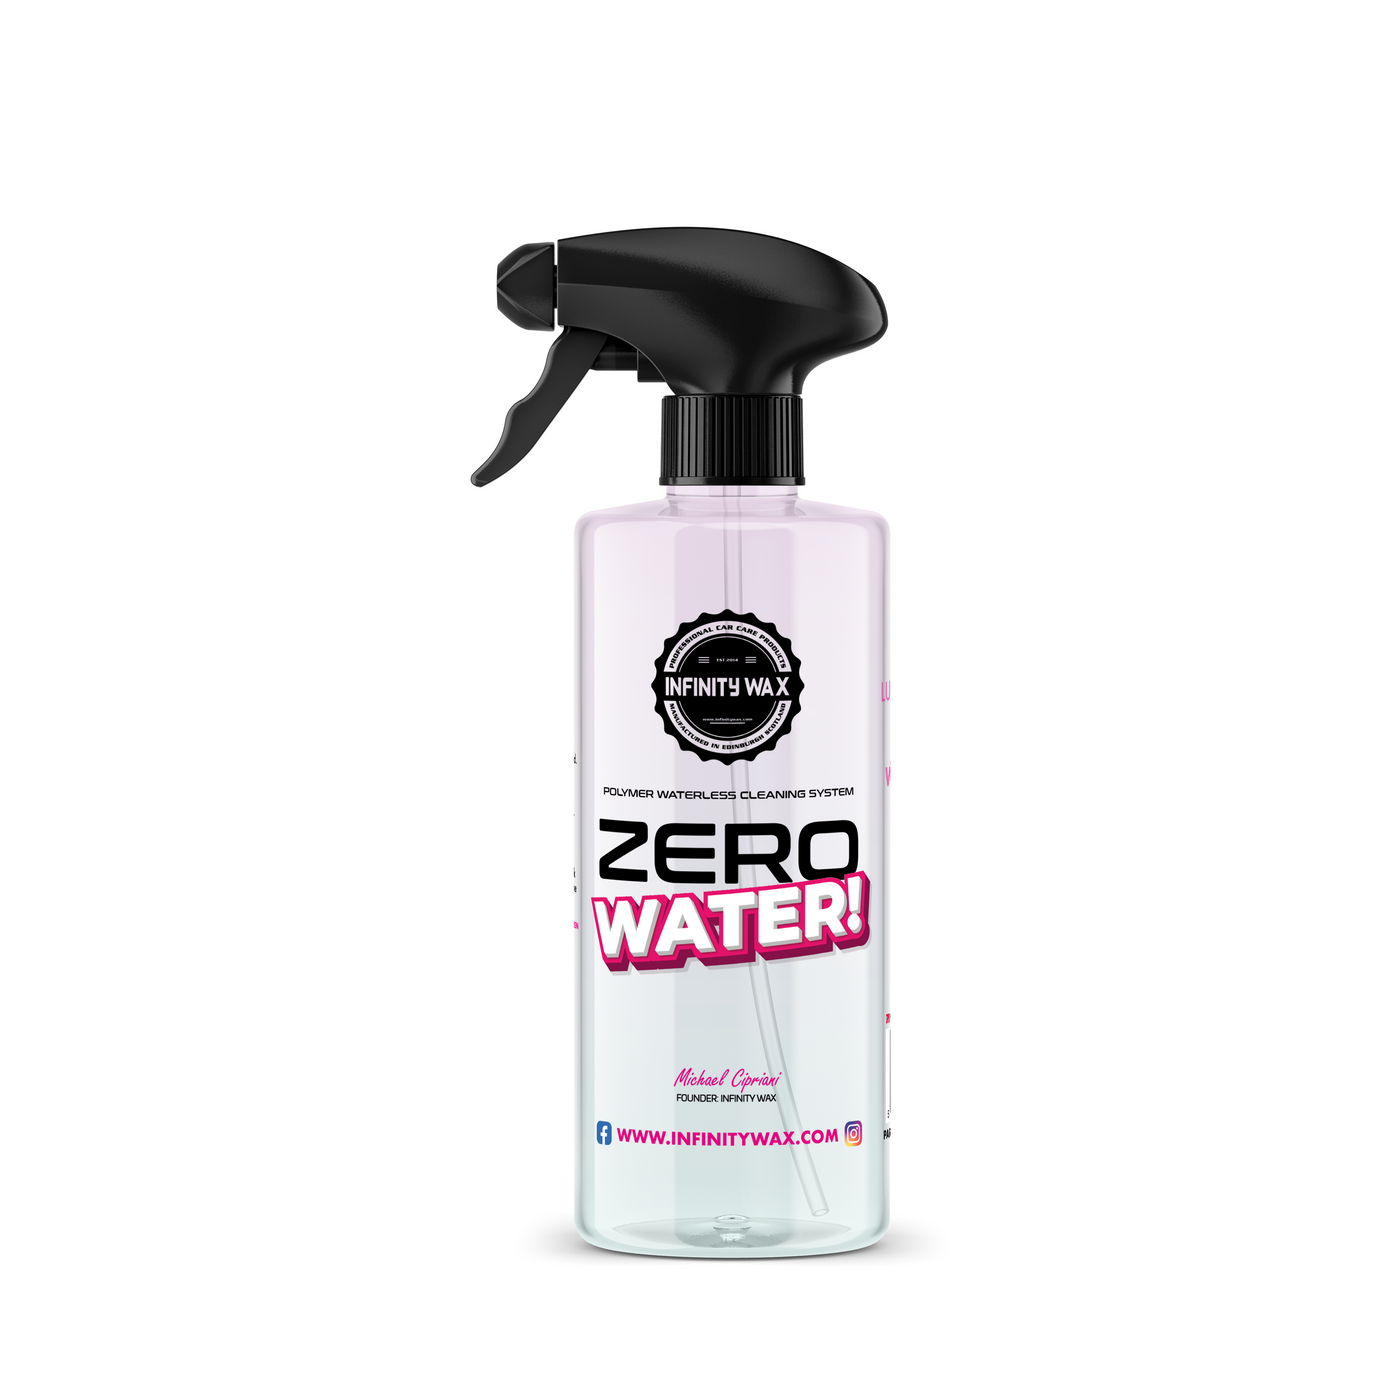 Zero Water - Waterless Wash